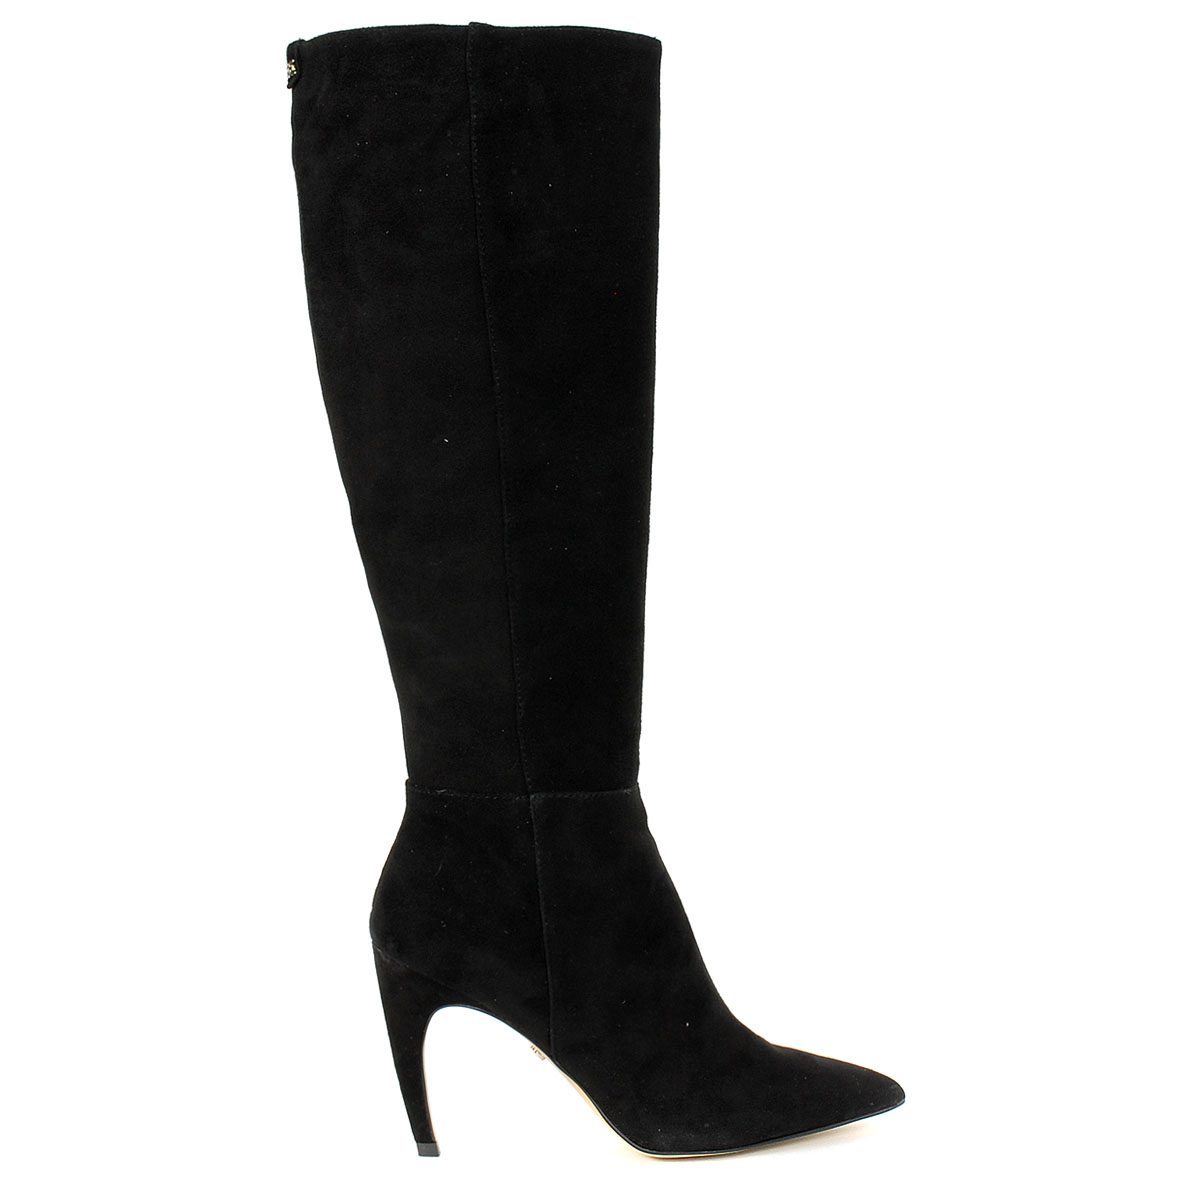 Sam Edelman Women's Fraya Black Lucca Suede Leather Stiletto Boots